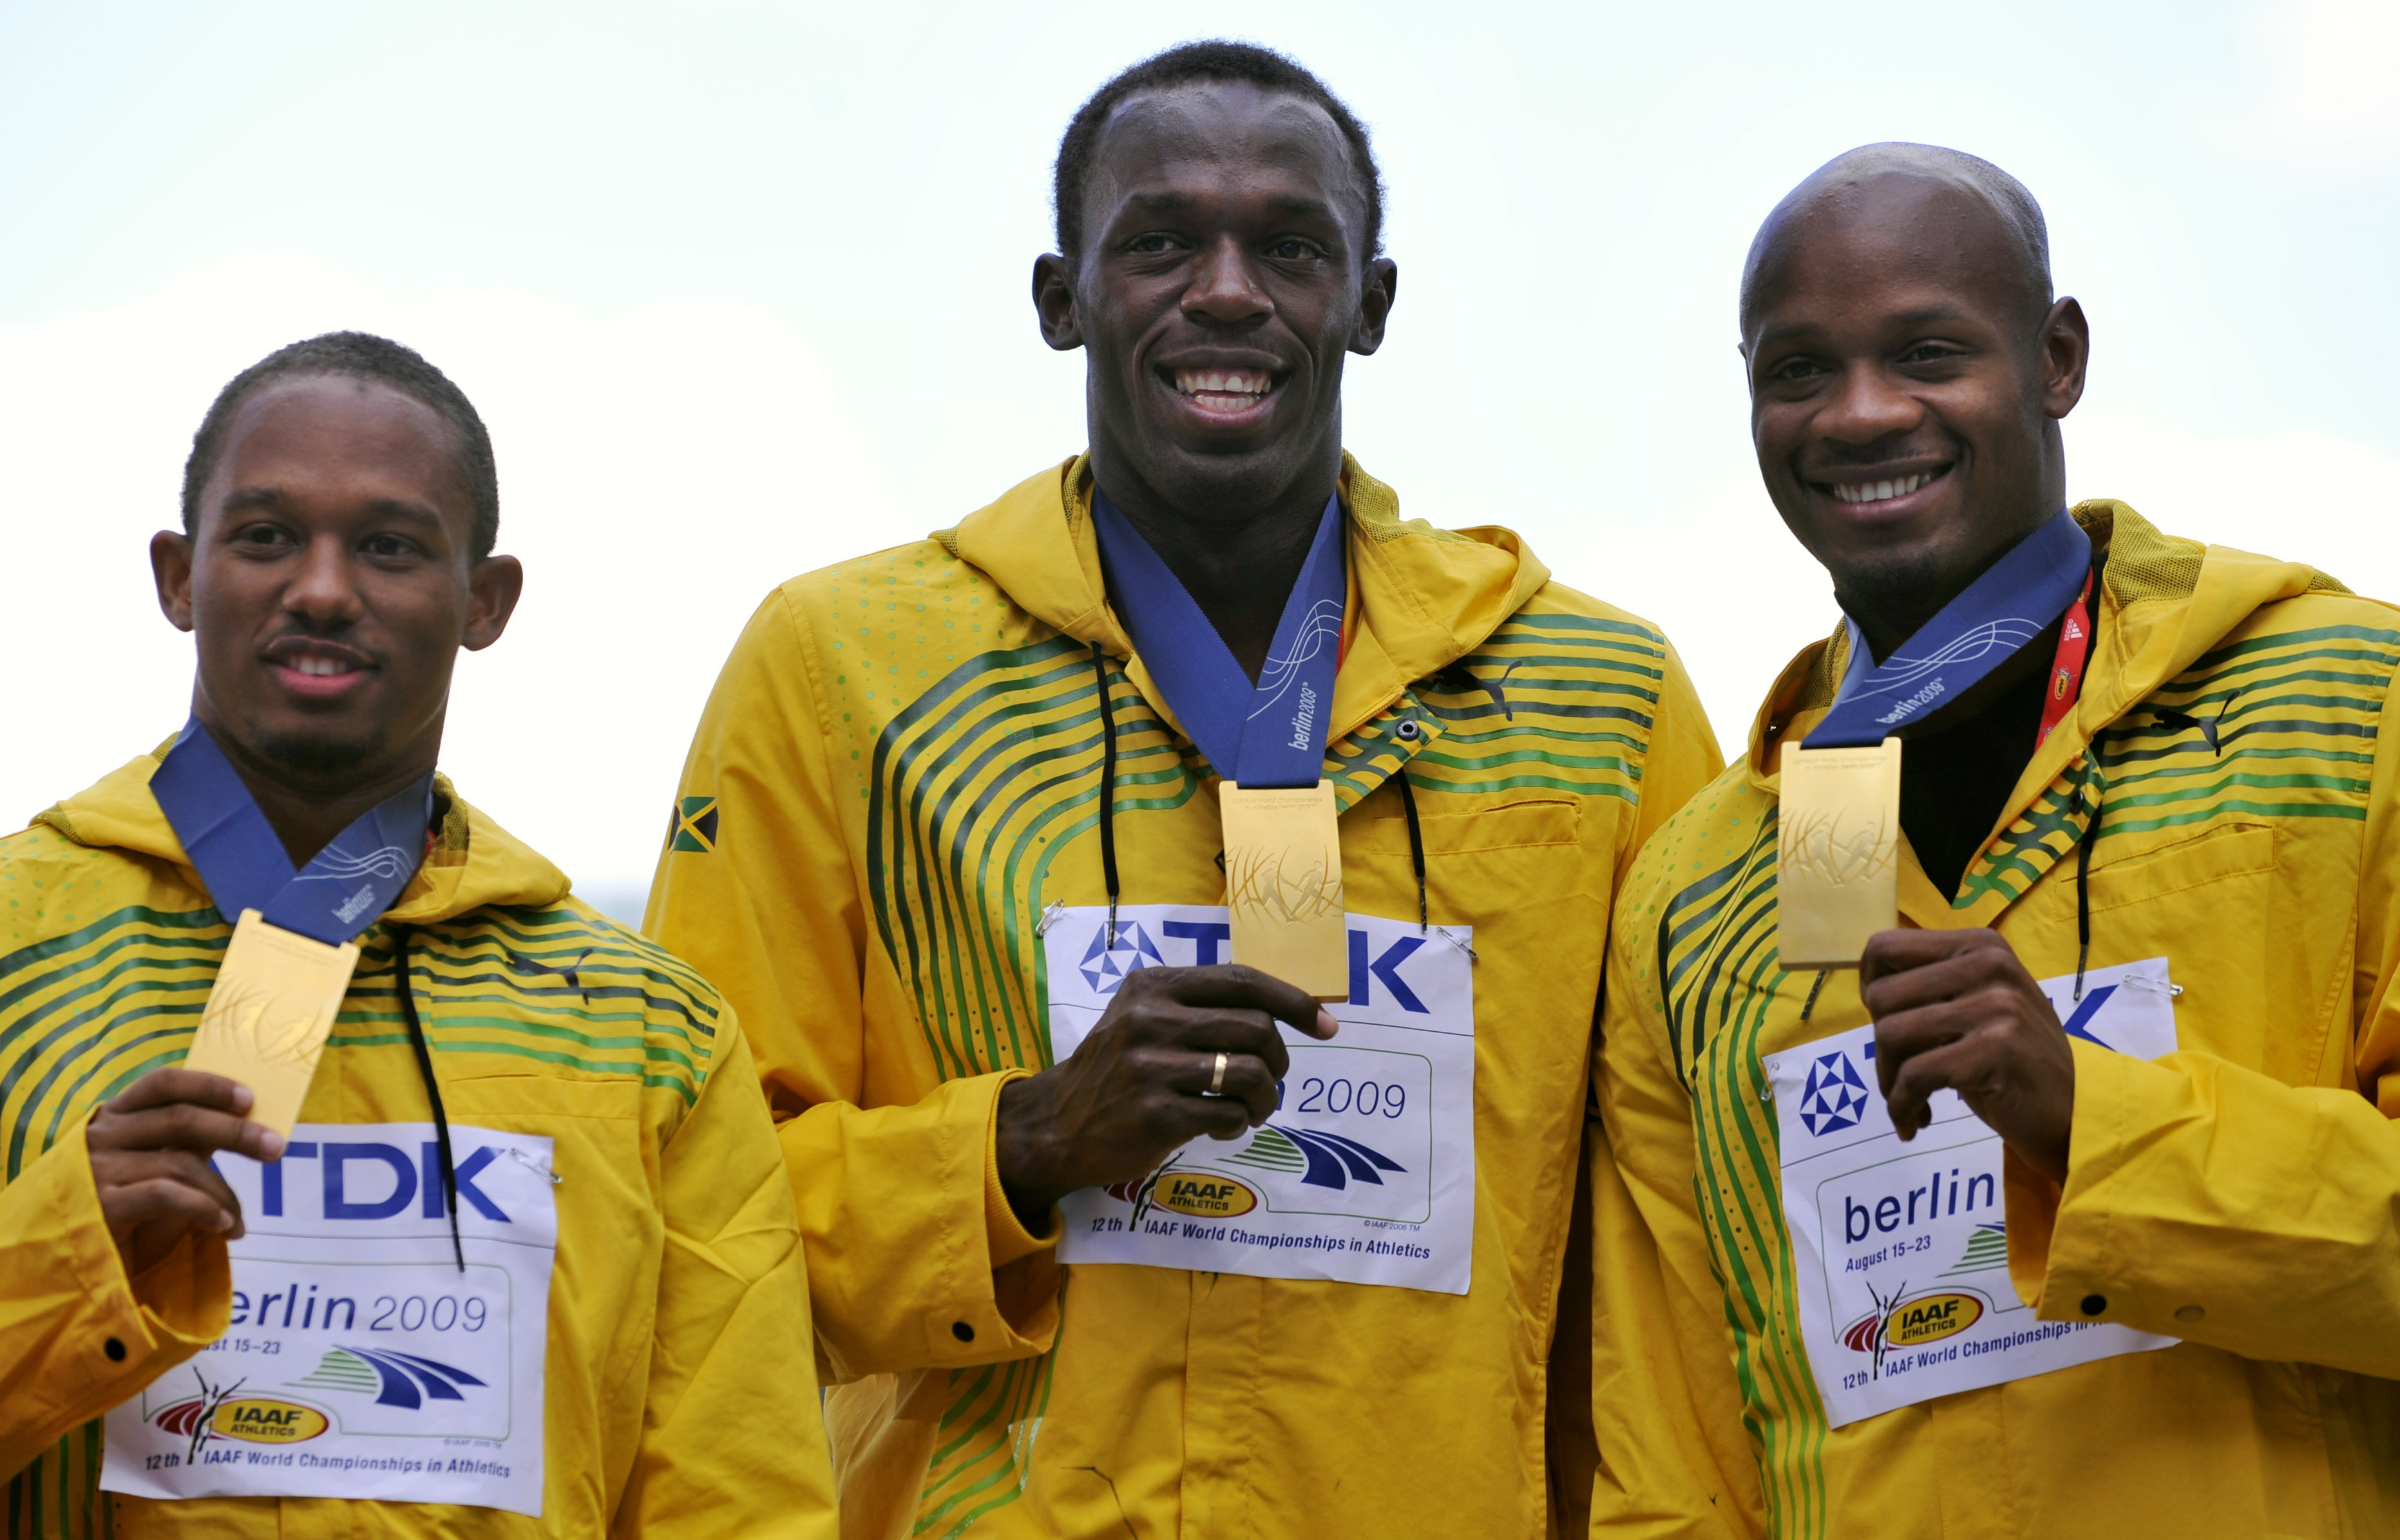 Från vänster: Michael Frater, Usain Bolt, Asafa Powell.